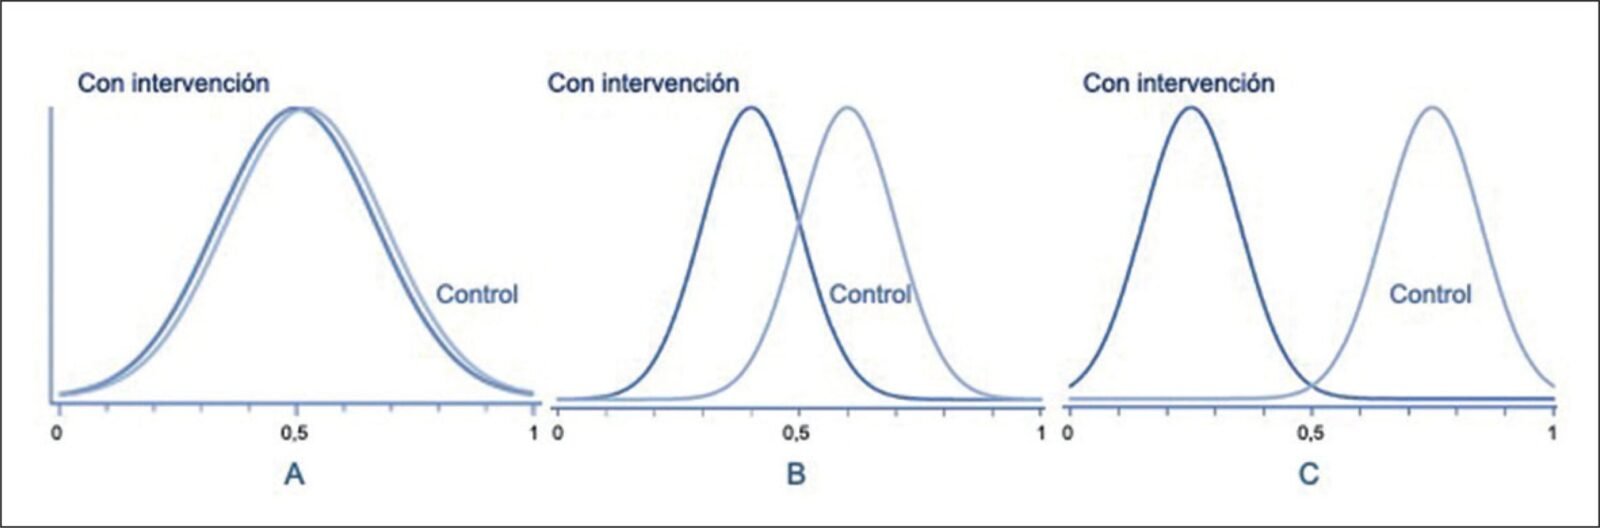 analisis-de-las-ventajas-y-desventajas-de-la-radiofrecuencia-un-enfoque-completo-en-espanol